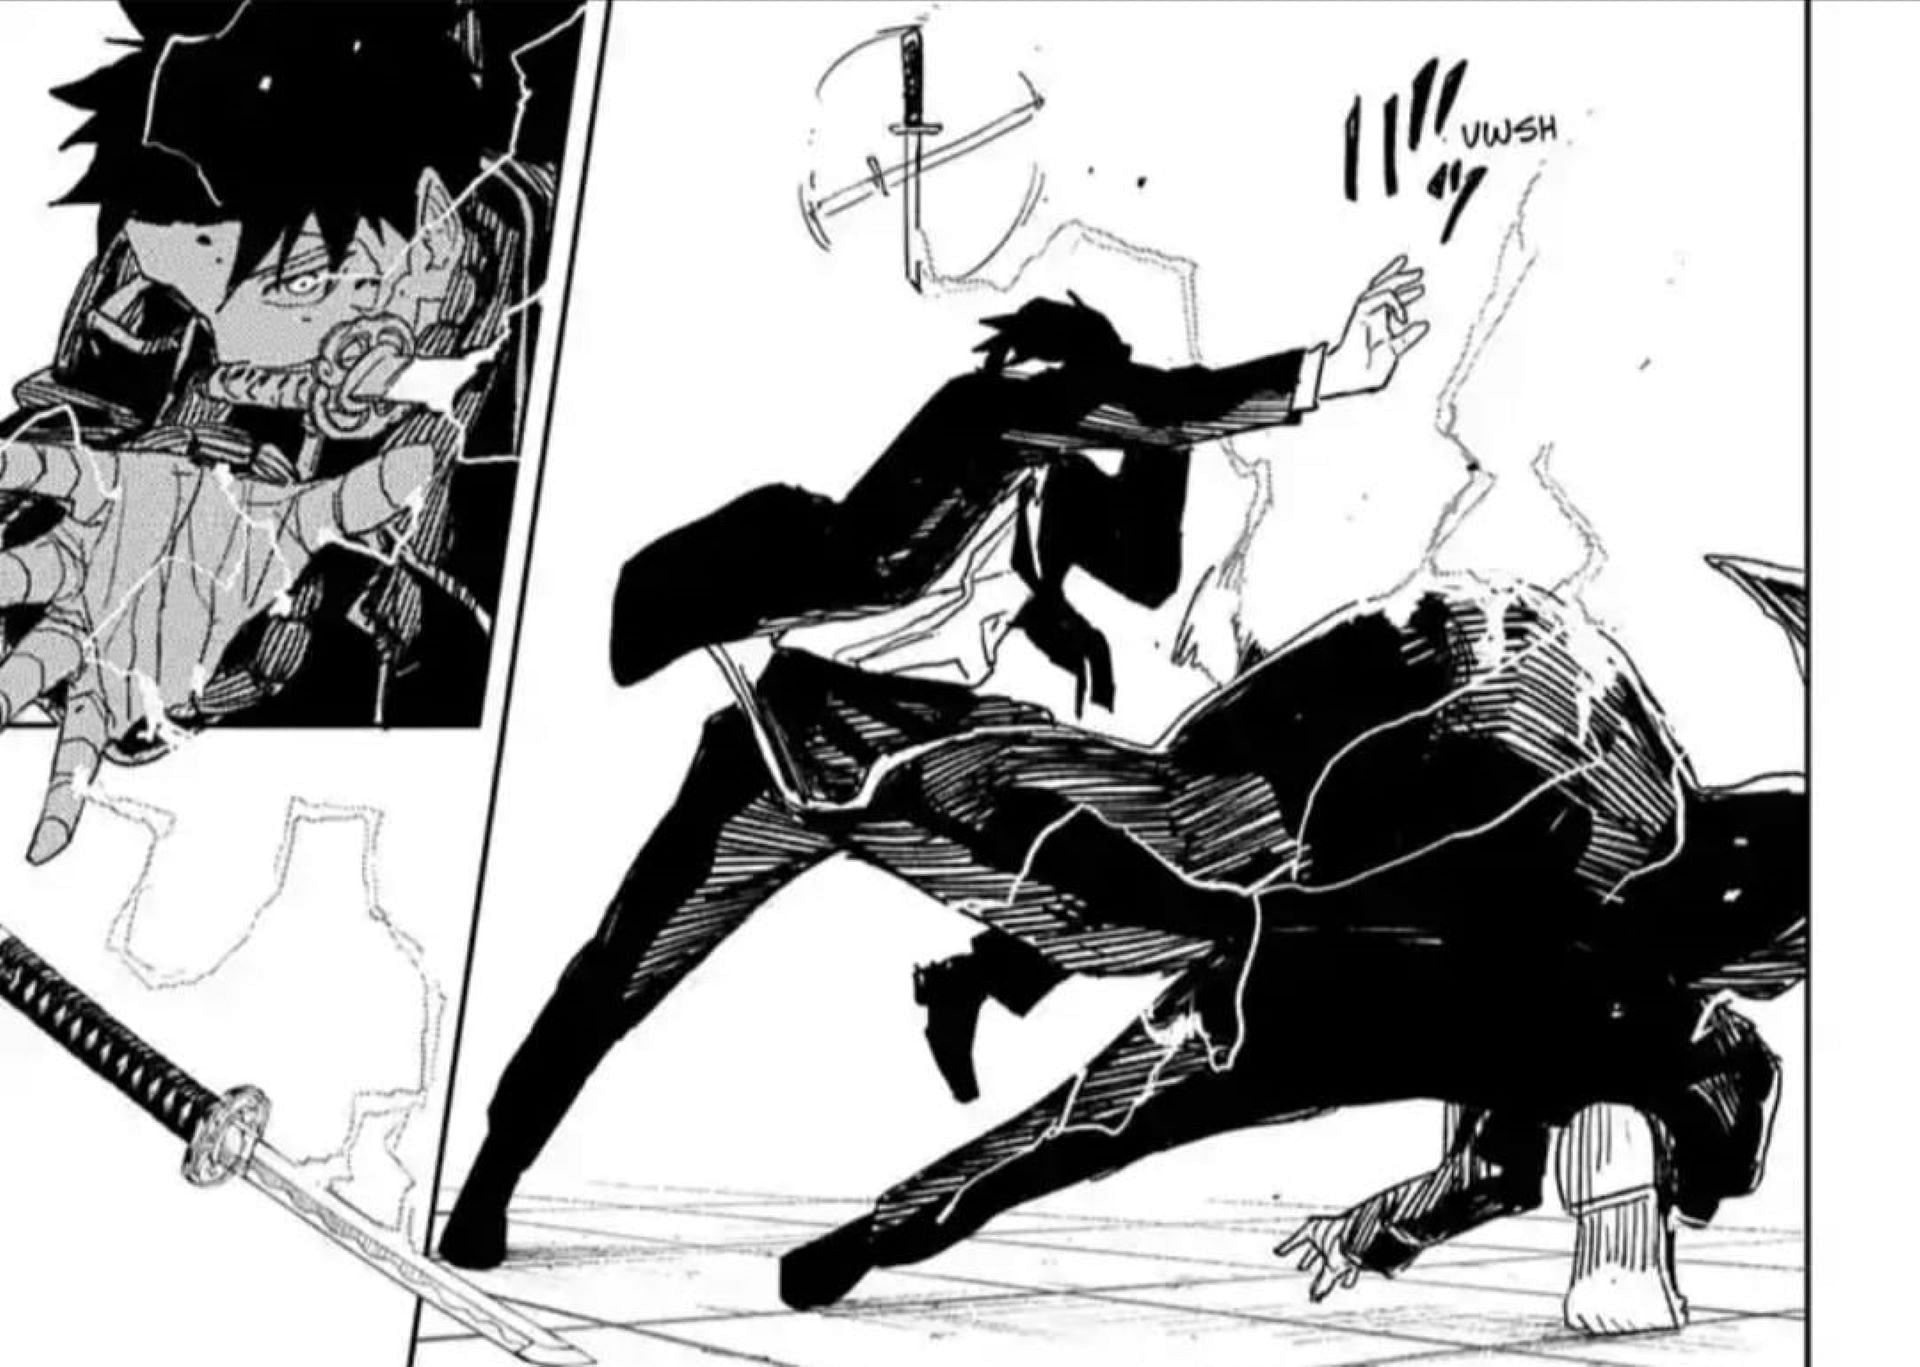 Chihiro vs the Hishaku member in Kagurabachi chapter 30 (Image via Takeru Hokazono/Shueisha)